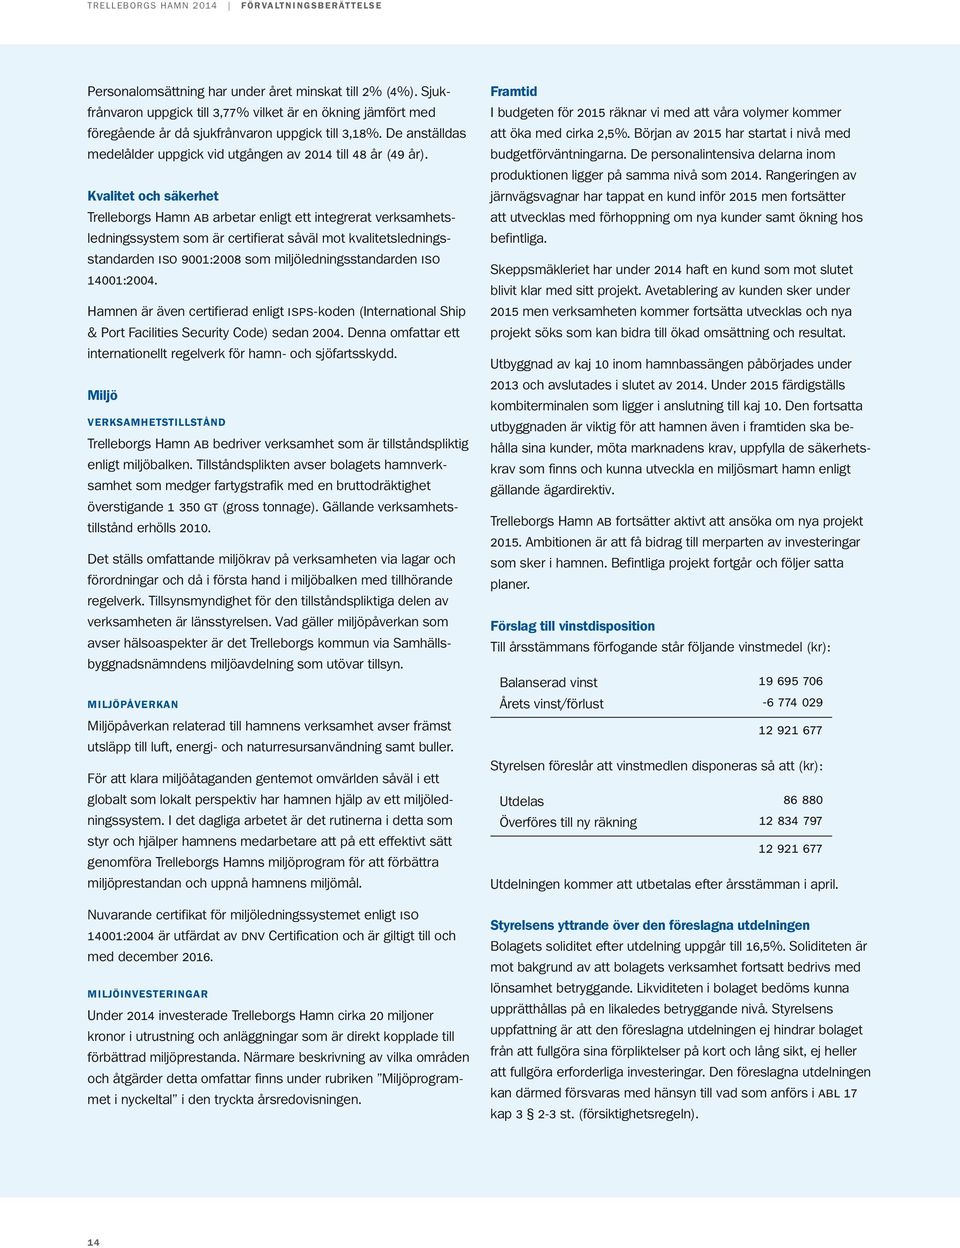 Kvalitet och säkerhet Trelleborgs Hamn ab arbetar enligt ett integrerat verksamhetsledningssystem som är certifierat såväl mot kvalitetsledningsstandarden iso 9001:2008 som miljöledningsstandarden